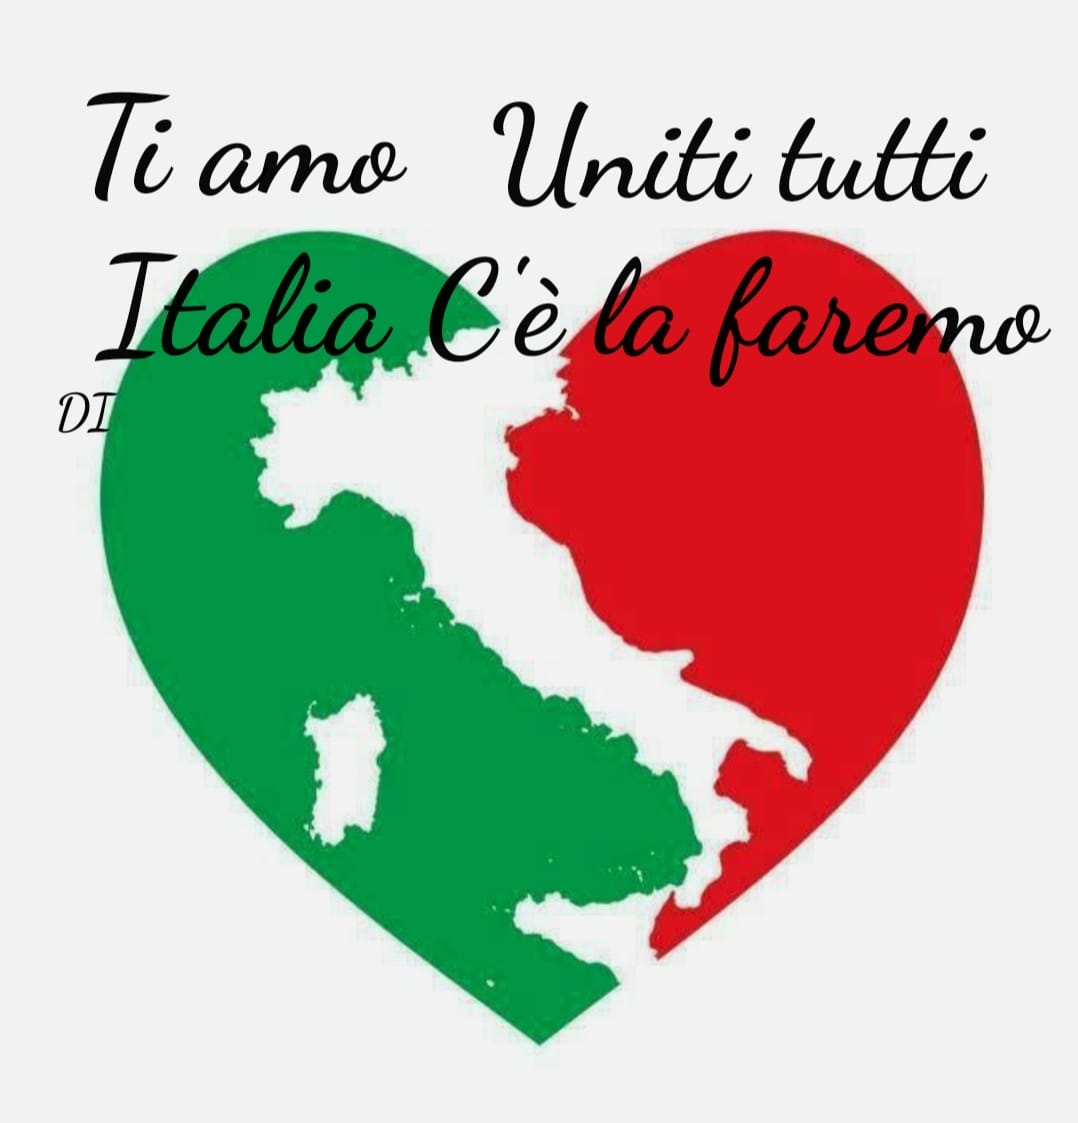 Ti Amo Italia. Tutti uniti, Ce la faremo!